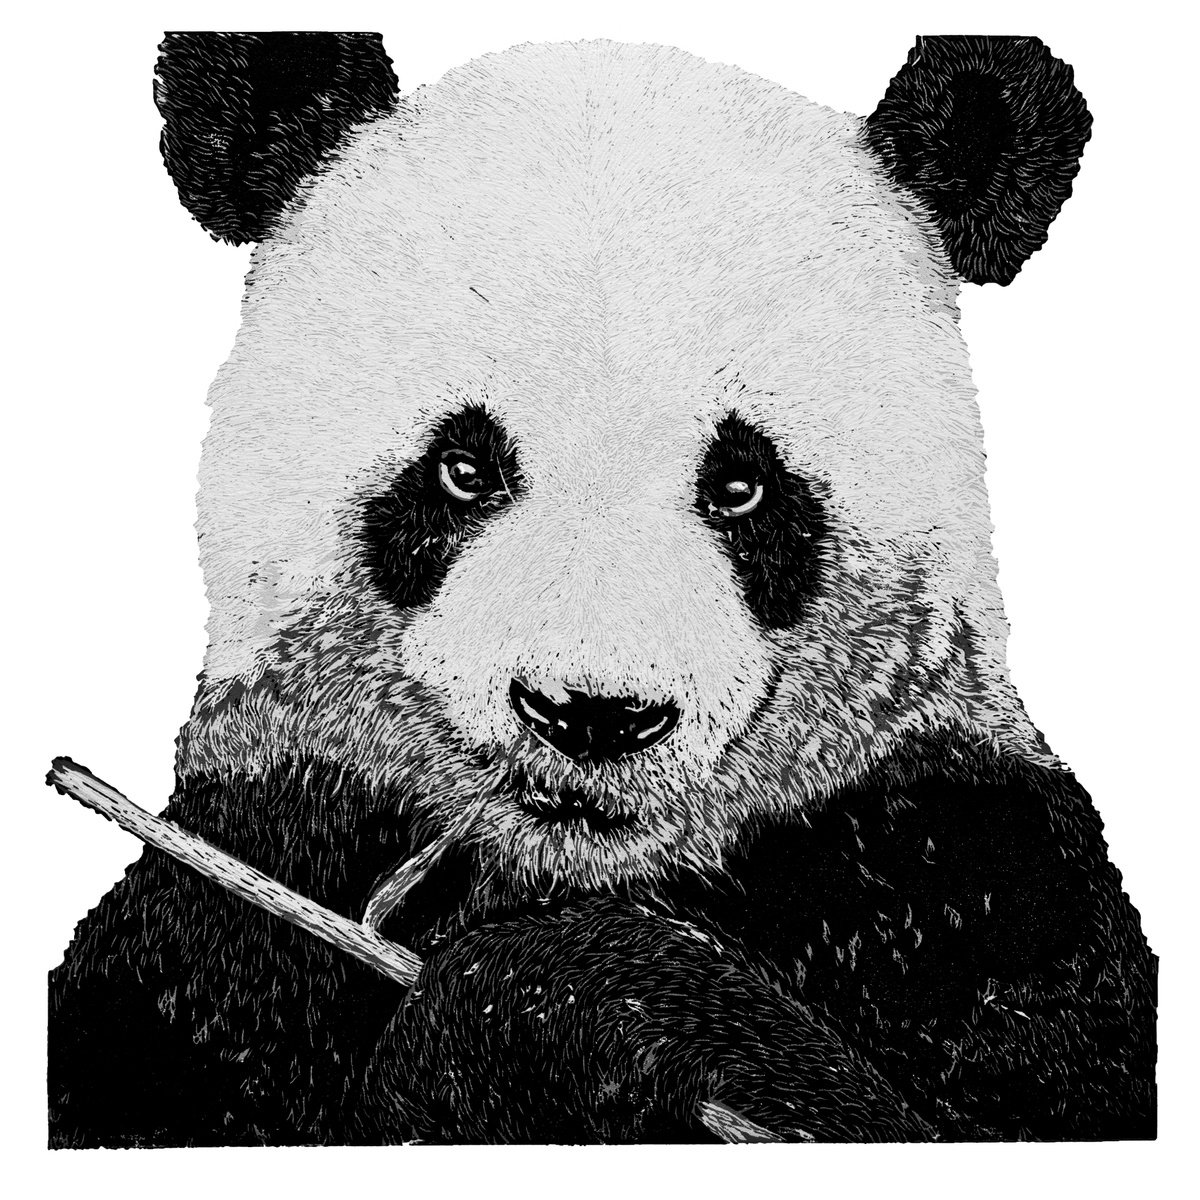 Panda by Wayne Longhurst